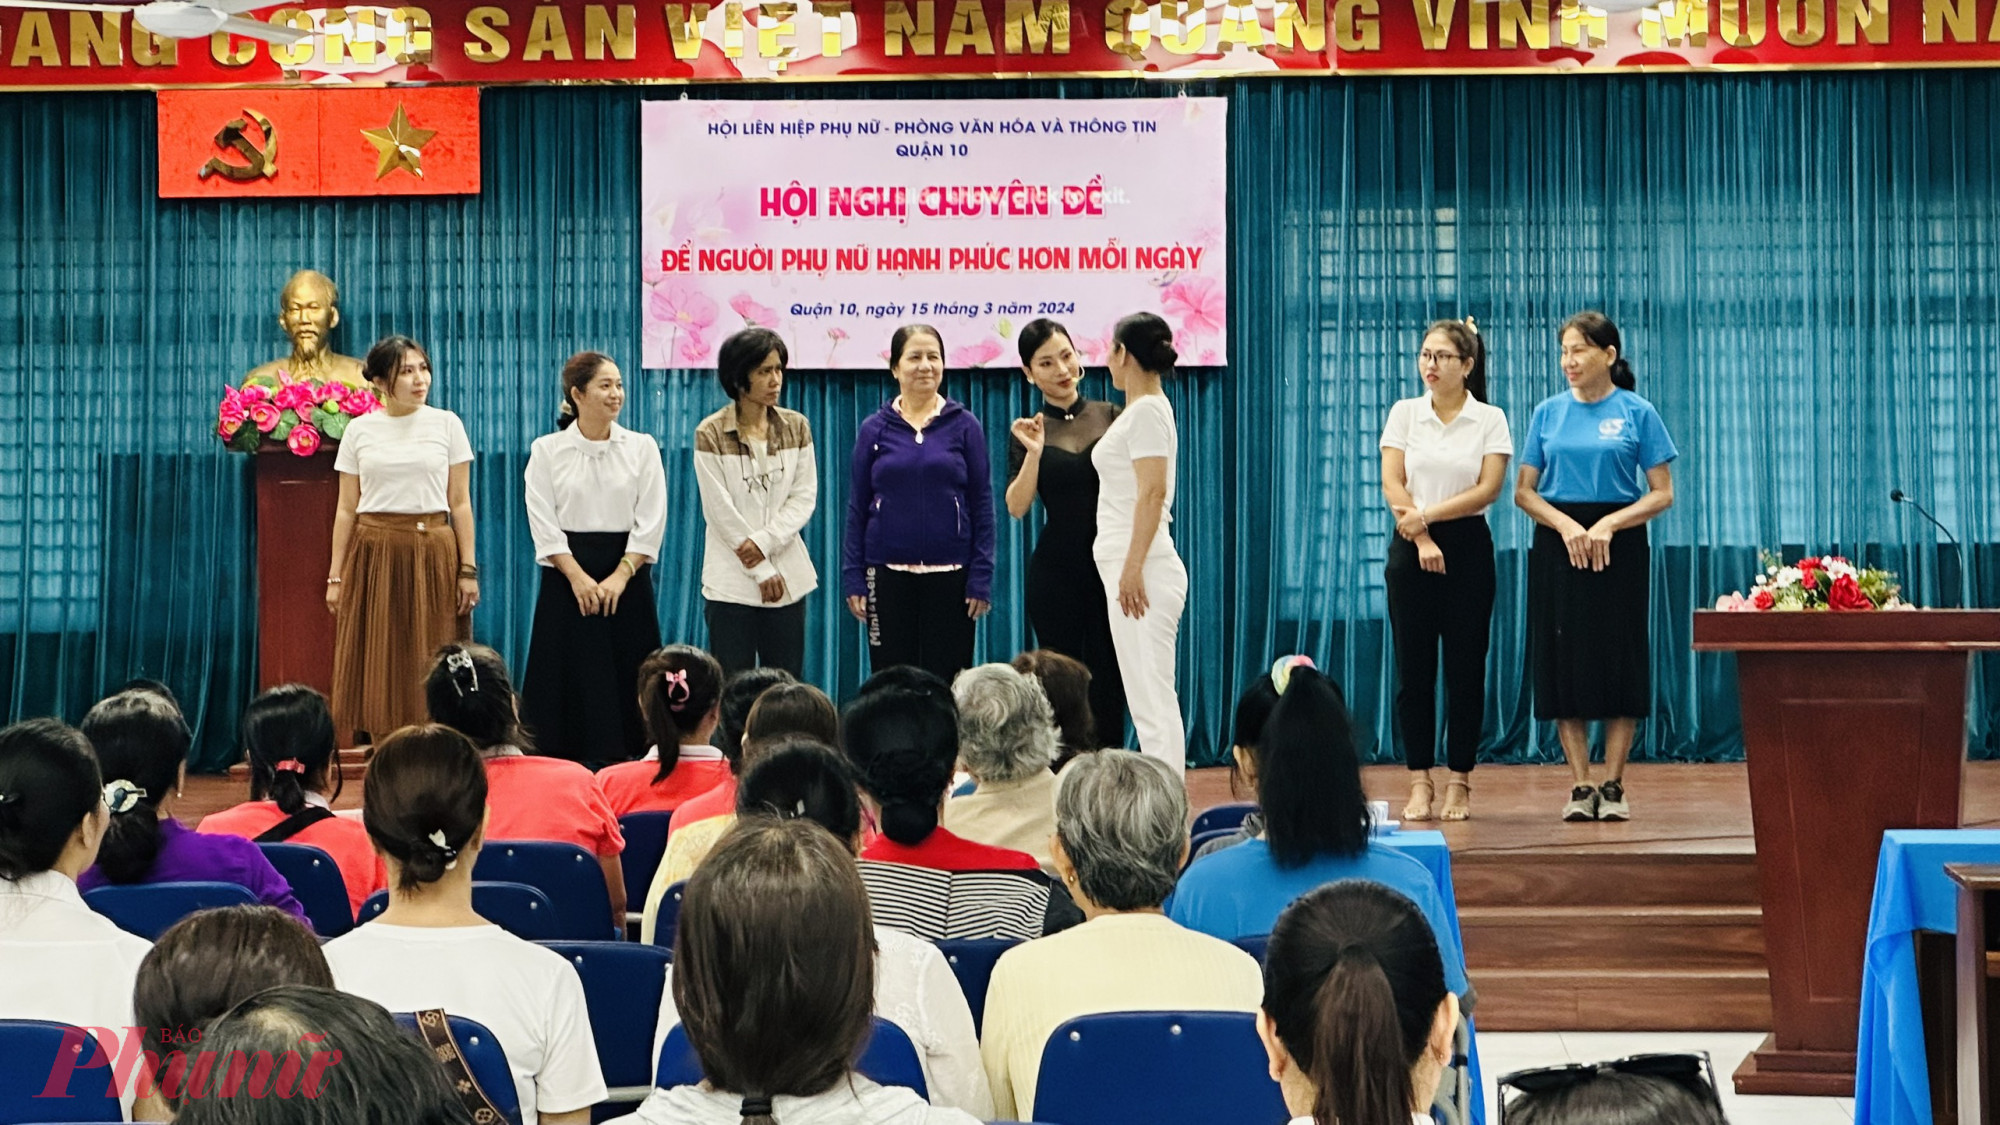 Báo caó viên Lê Vân Anh hướng dẫn chị em phụ nữ cách đi đứng, biểu cảm trên khuôn mặt, văn hóa giao tiếp và làm chủ sân khấu….